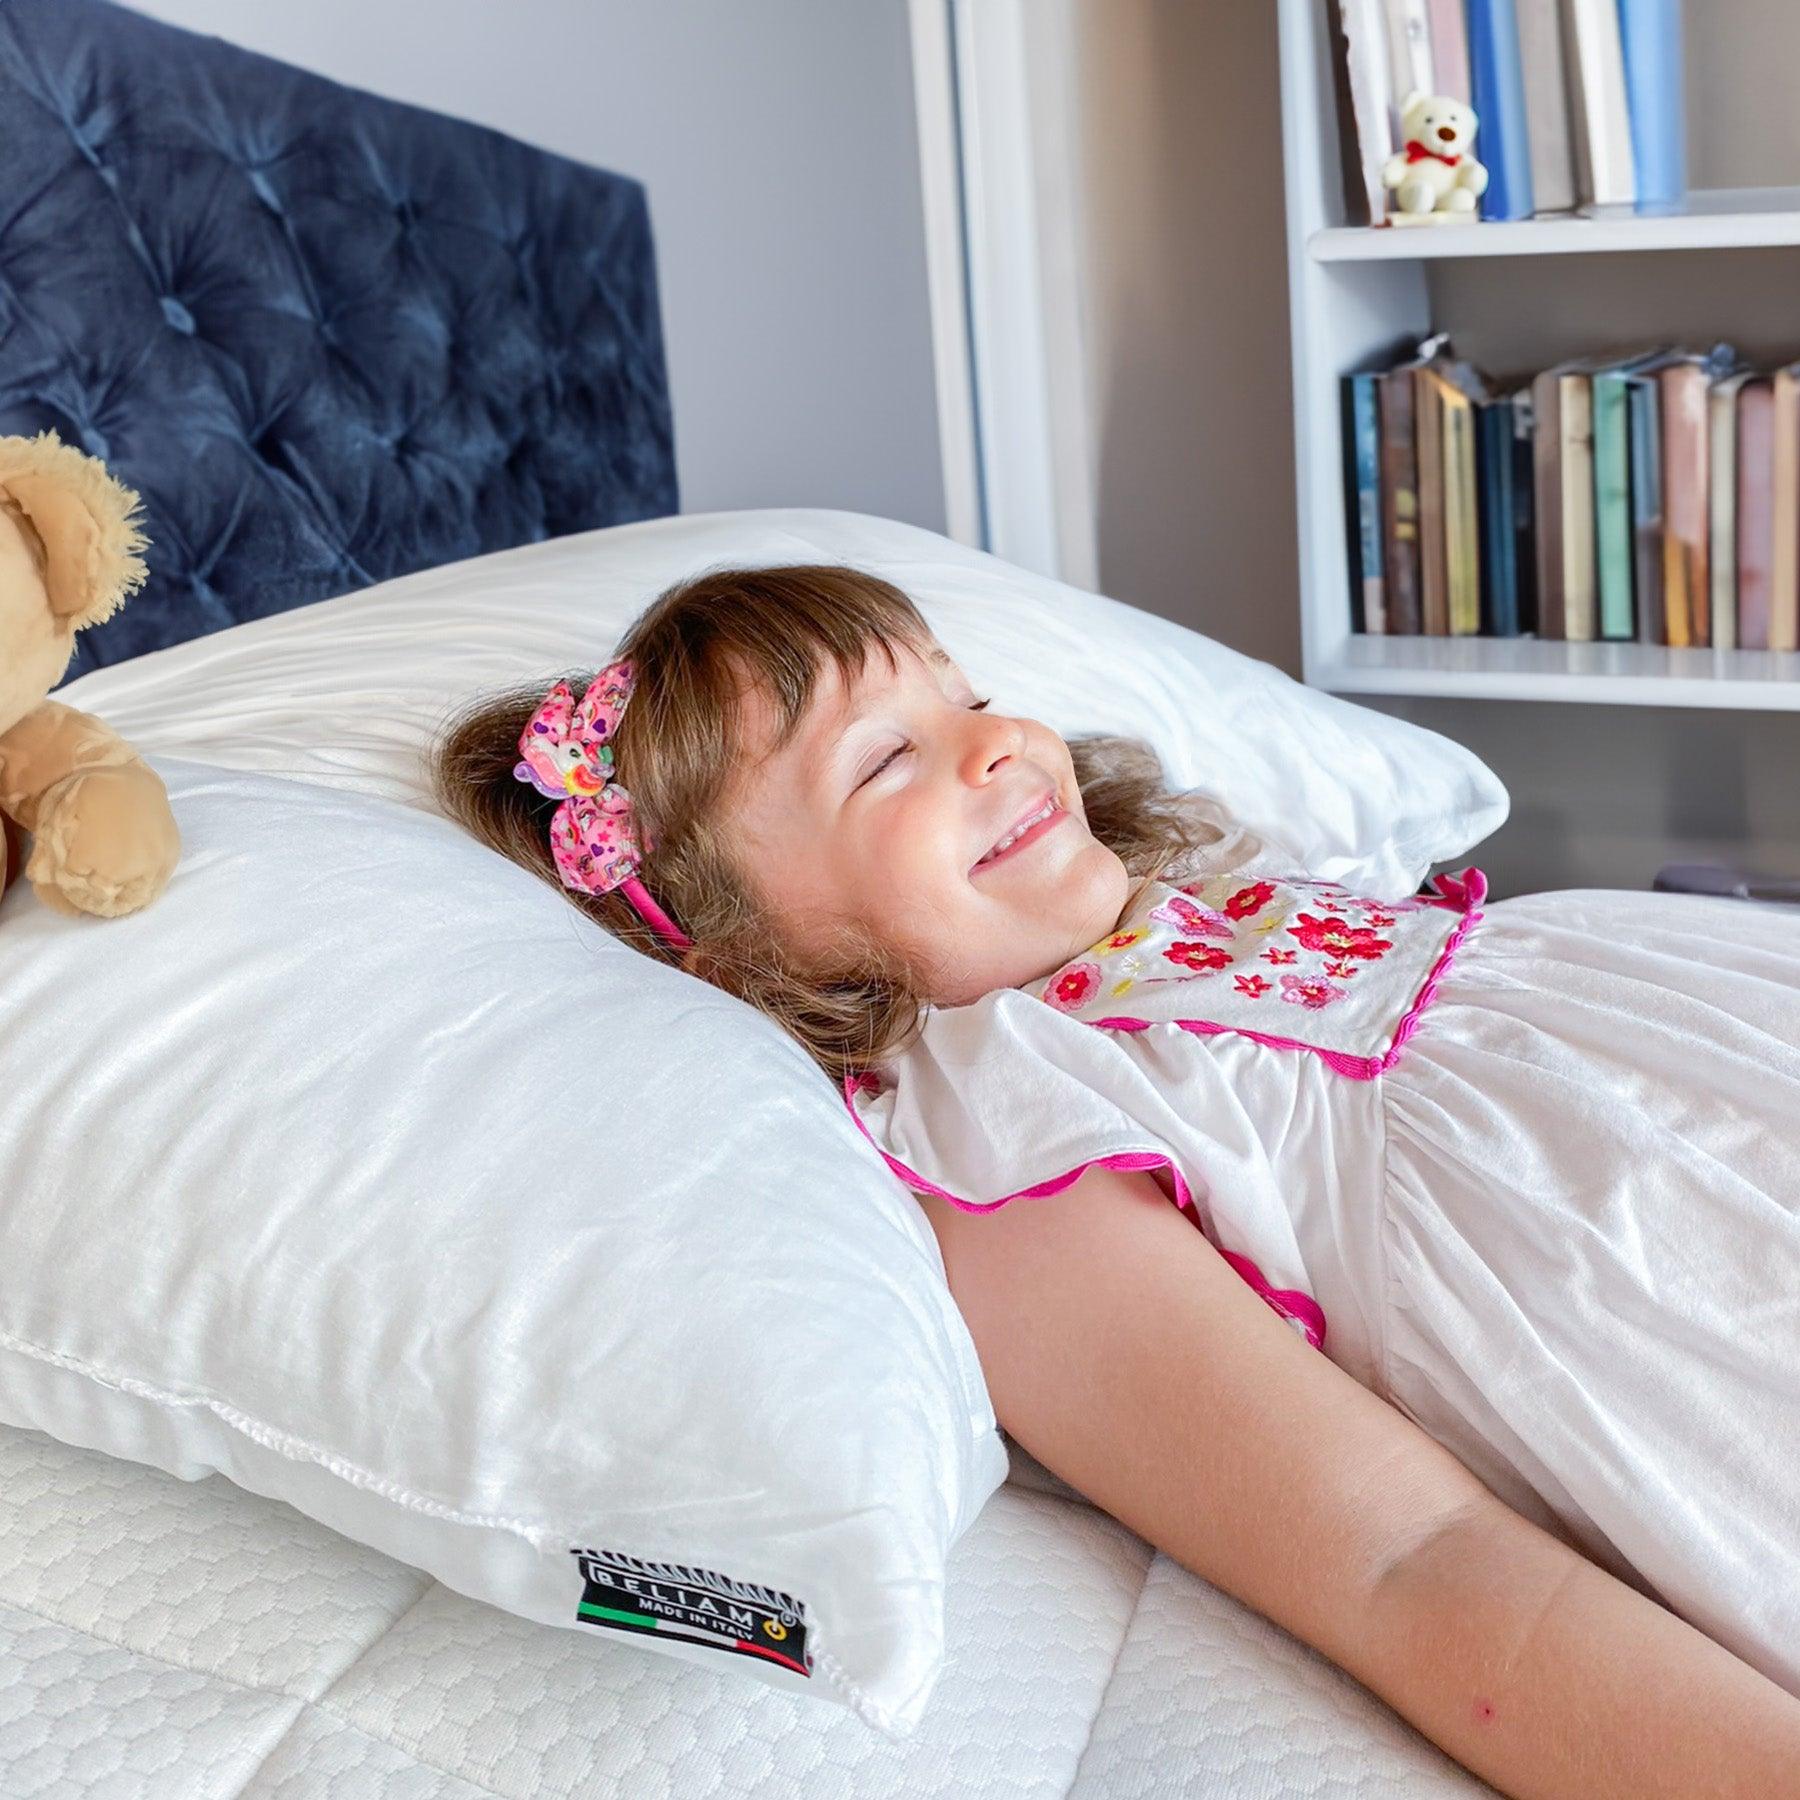 Cuscino antisoffocamento Pisolo di Beliamo per bambini, progettato per garantire sicurezza e comfort durante il sonno